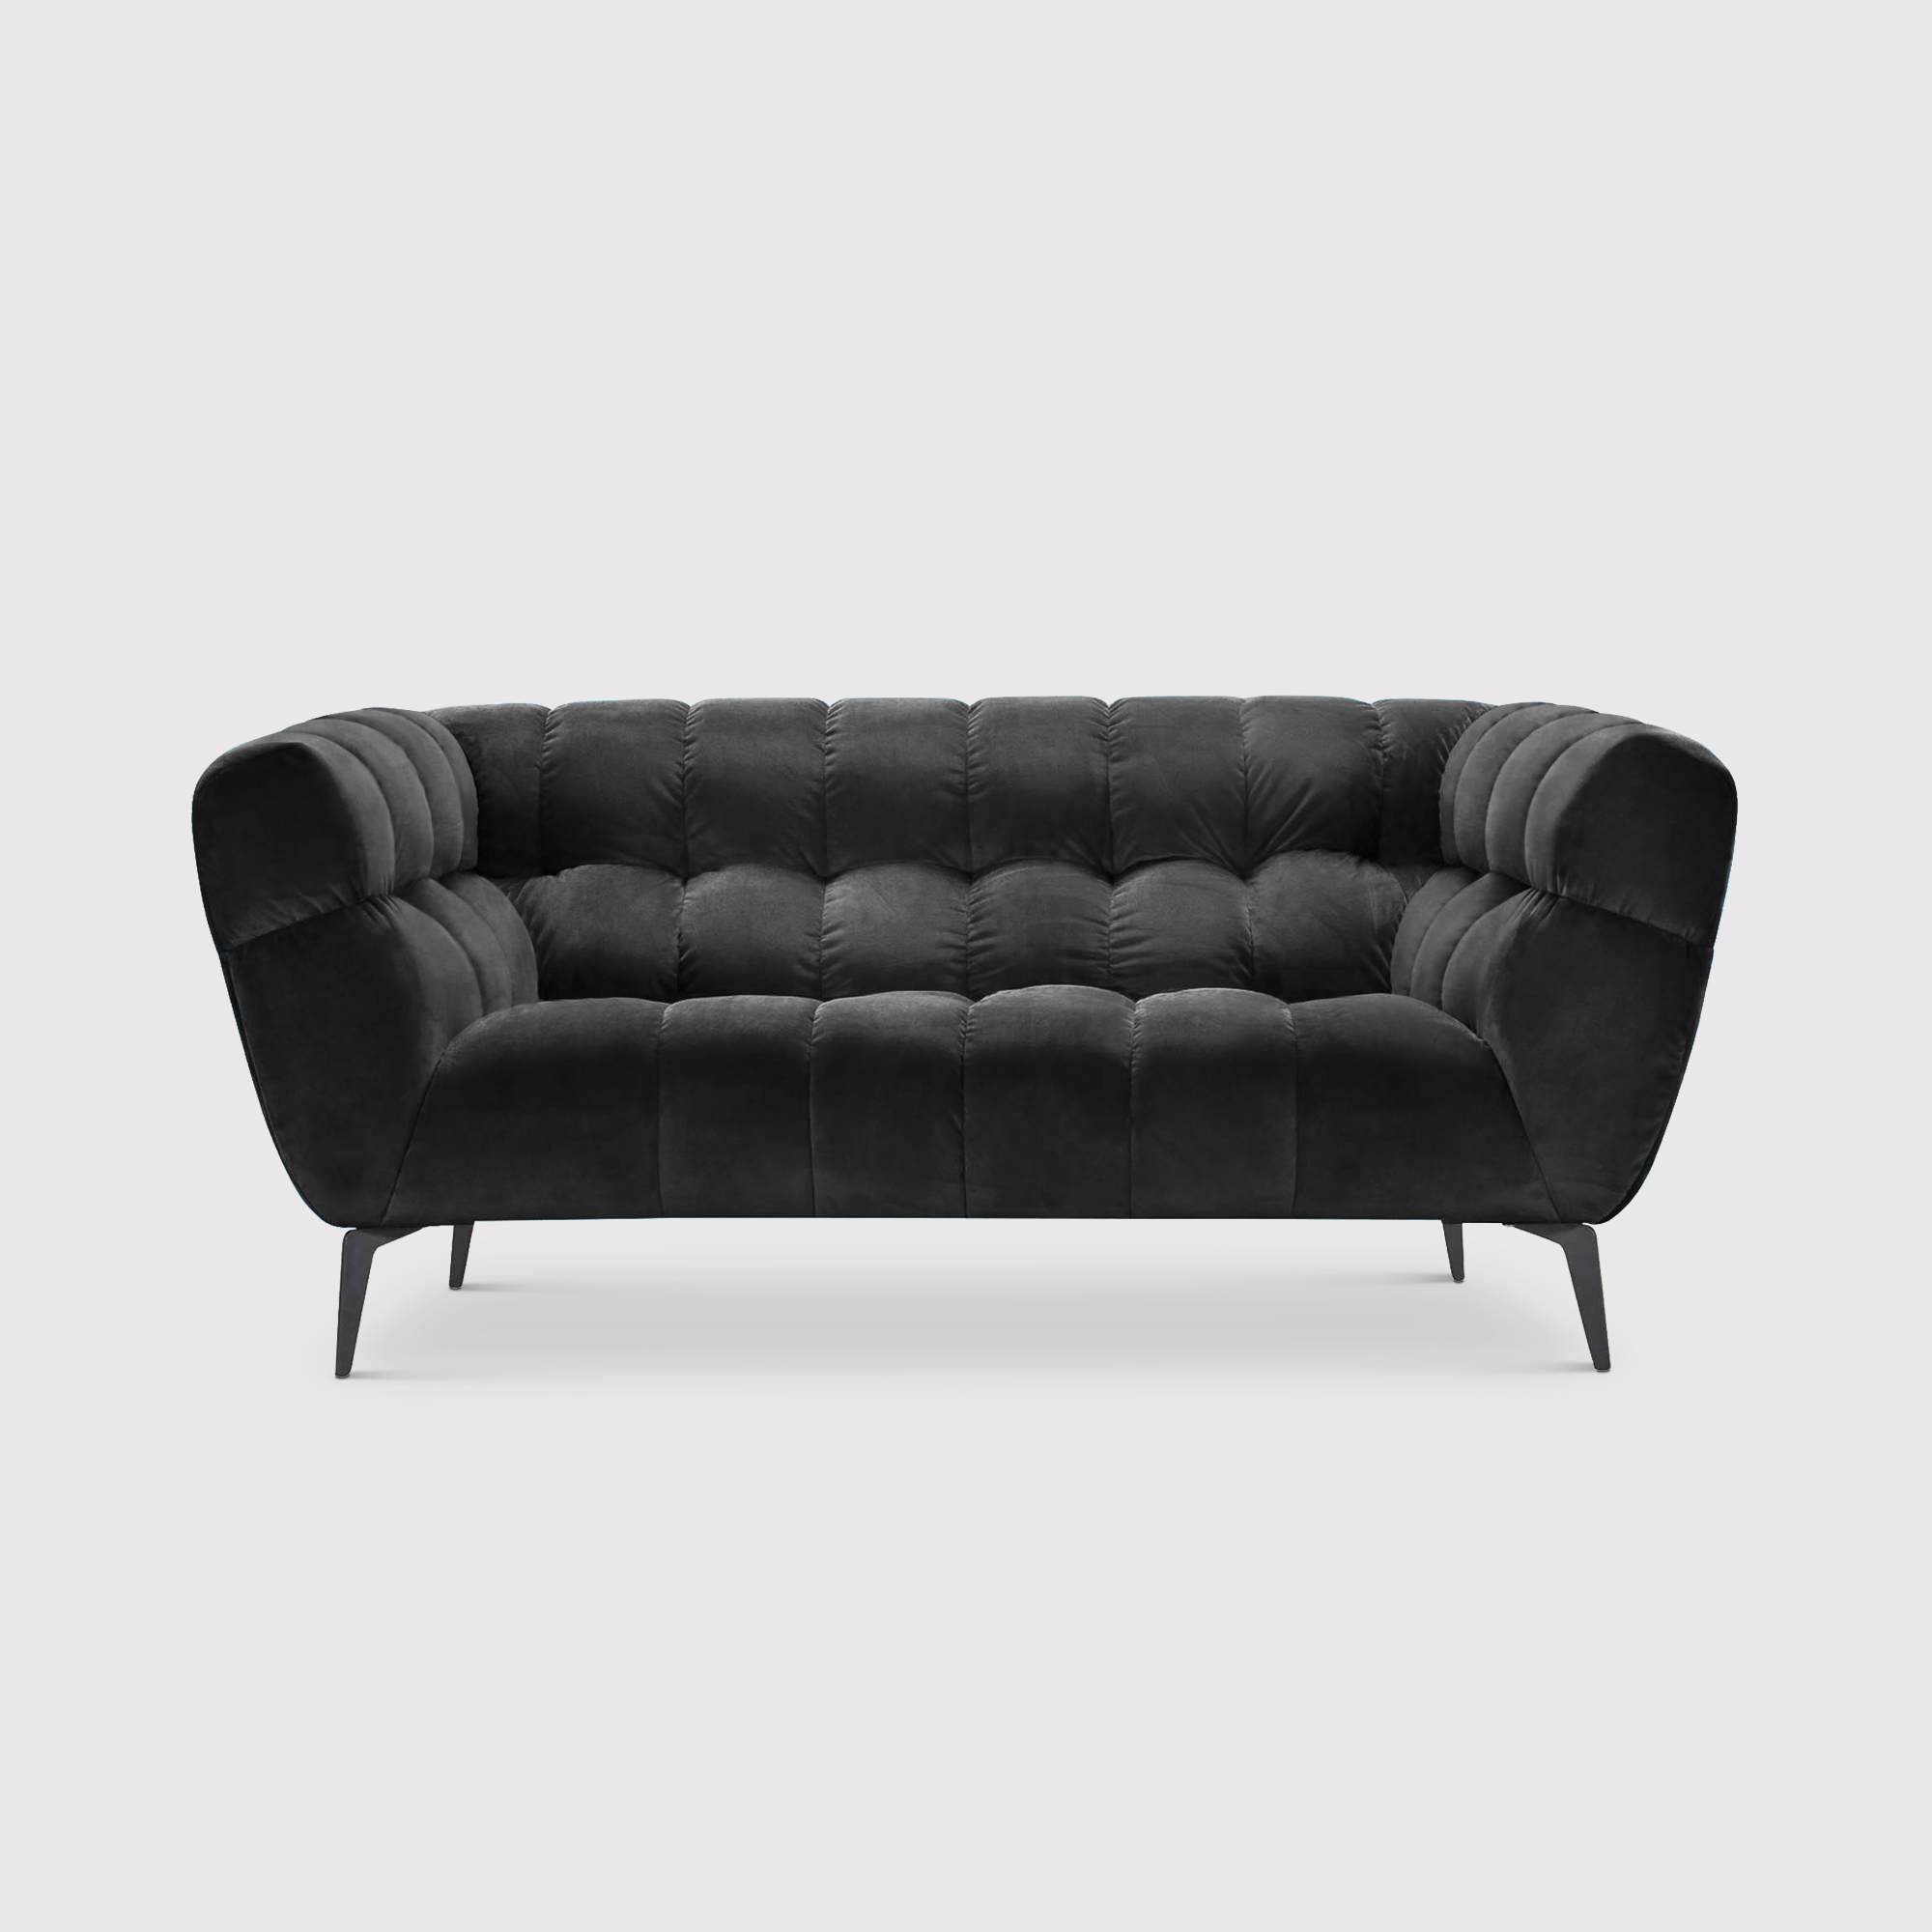 Azalea 2 Seater Sofa, Black Fabric | Barker & Stonehouse